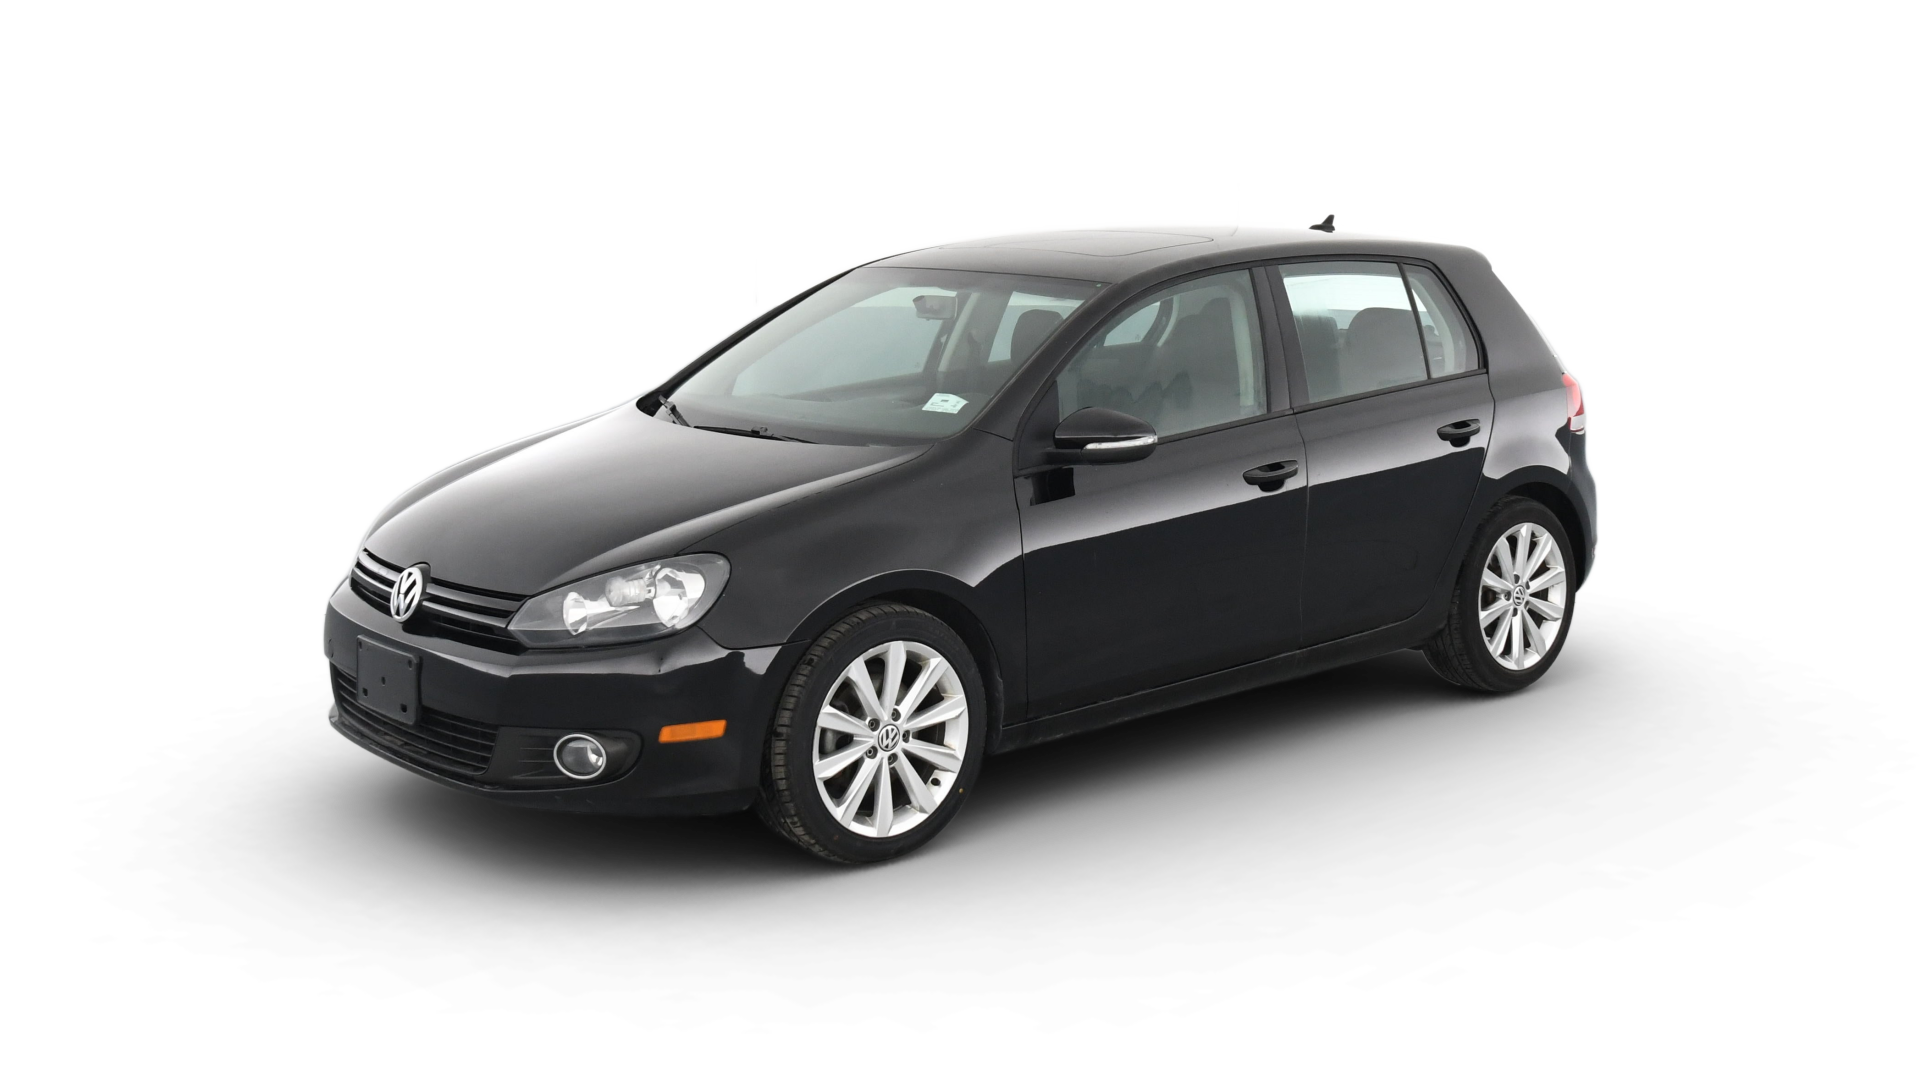 Volkswagen Golf model image.